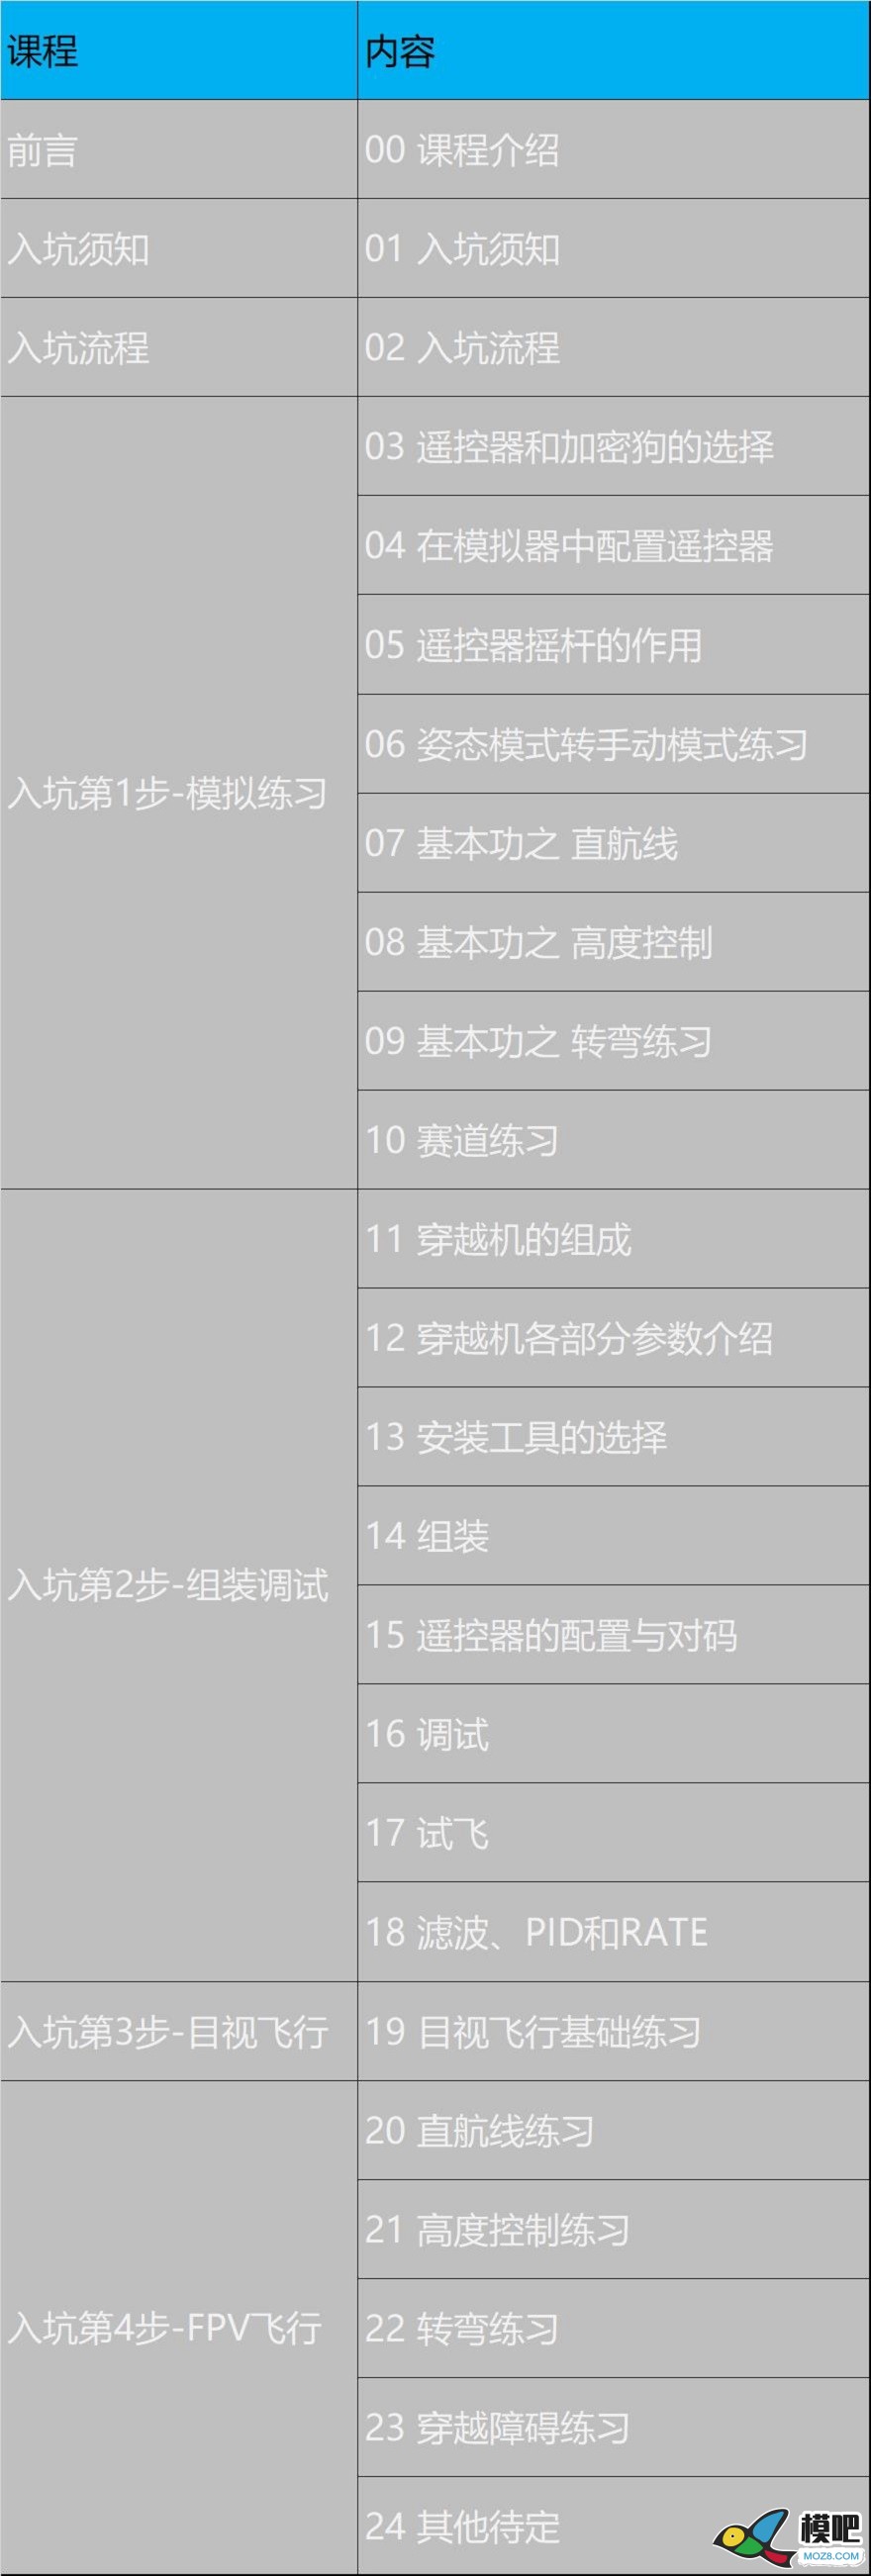 《穿越机入坑指南》已更新至3.11 穿越机的可选配件 穿越机,电池,天线,电调,电机 作者:yangjinduo 2949 